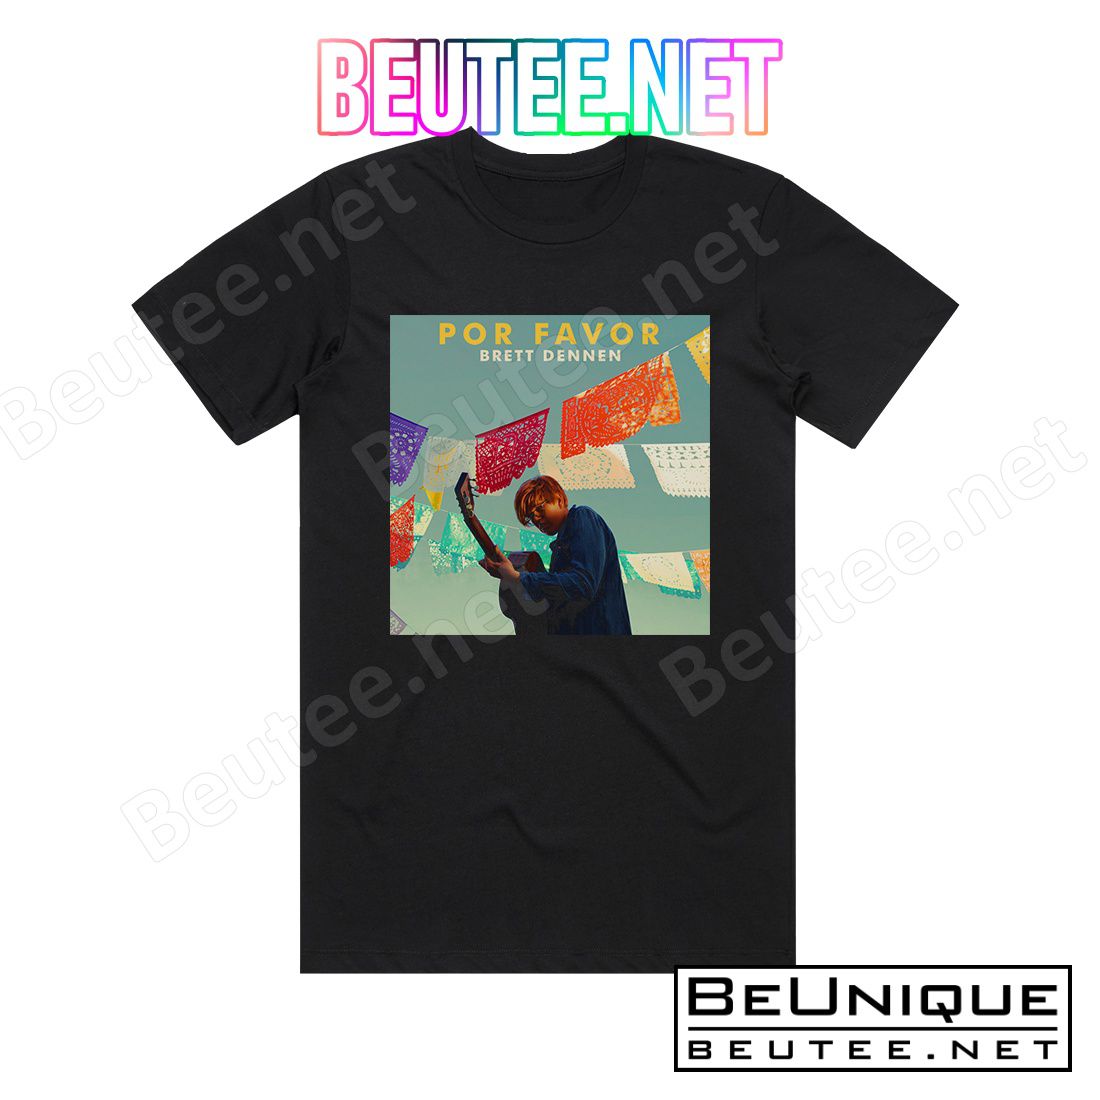 Brett Dennen Por Favor Album Cover T-Shirt